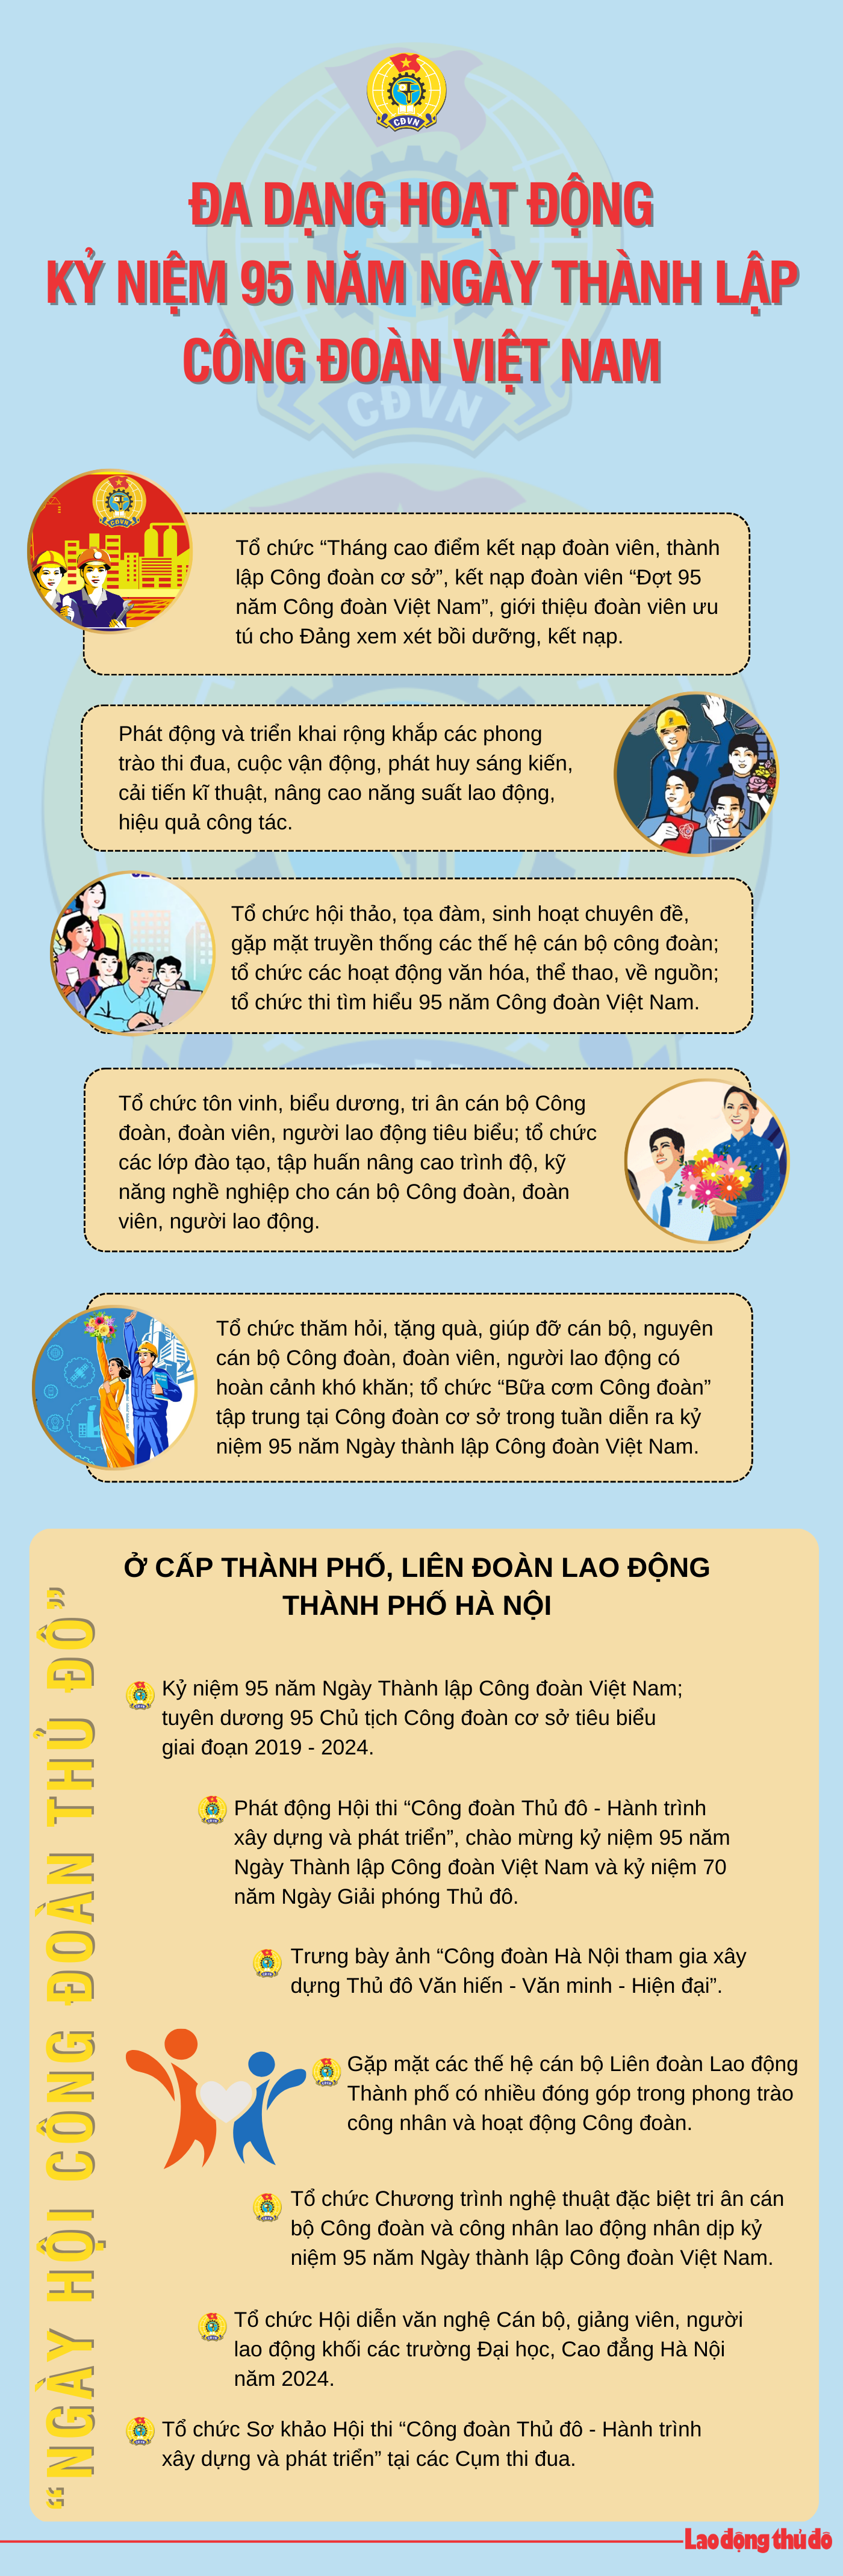 Infographic: Đa dạng hoạt động kỷ niệm 95 năm ngày thành lập Công đoàn Việt Nam